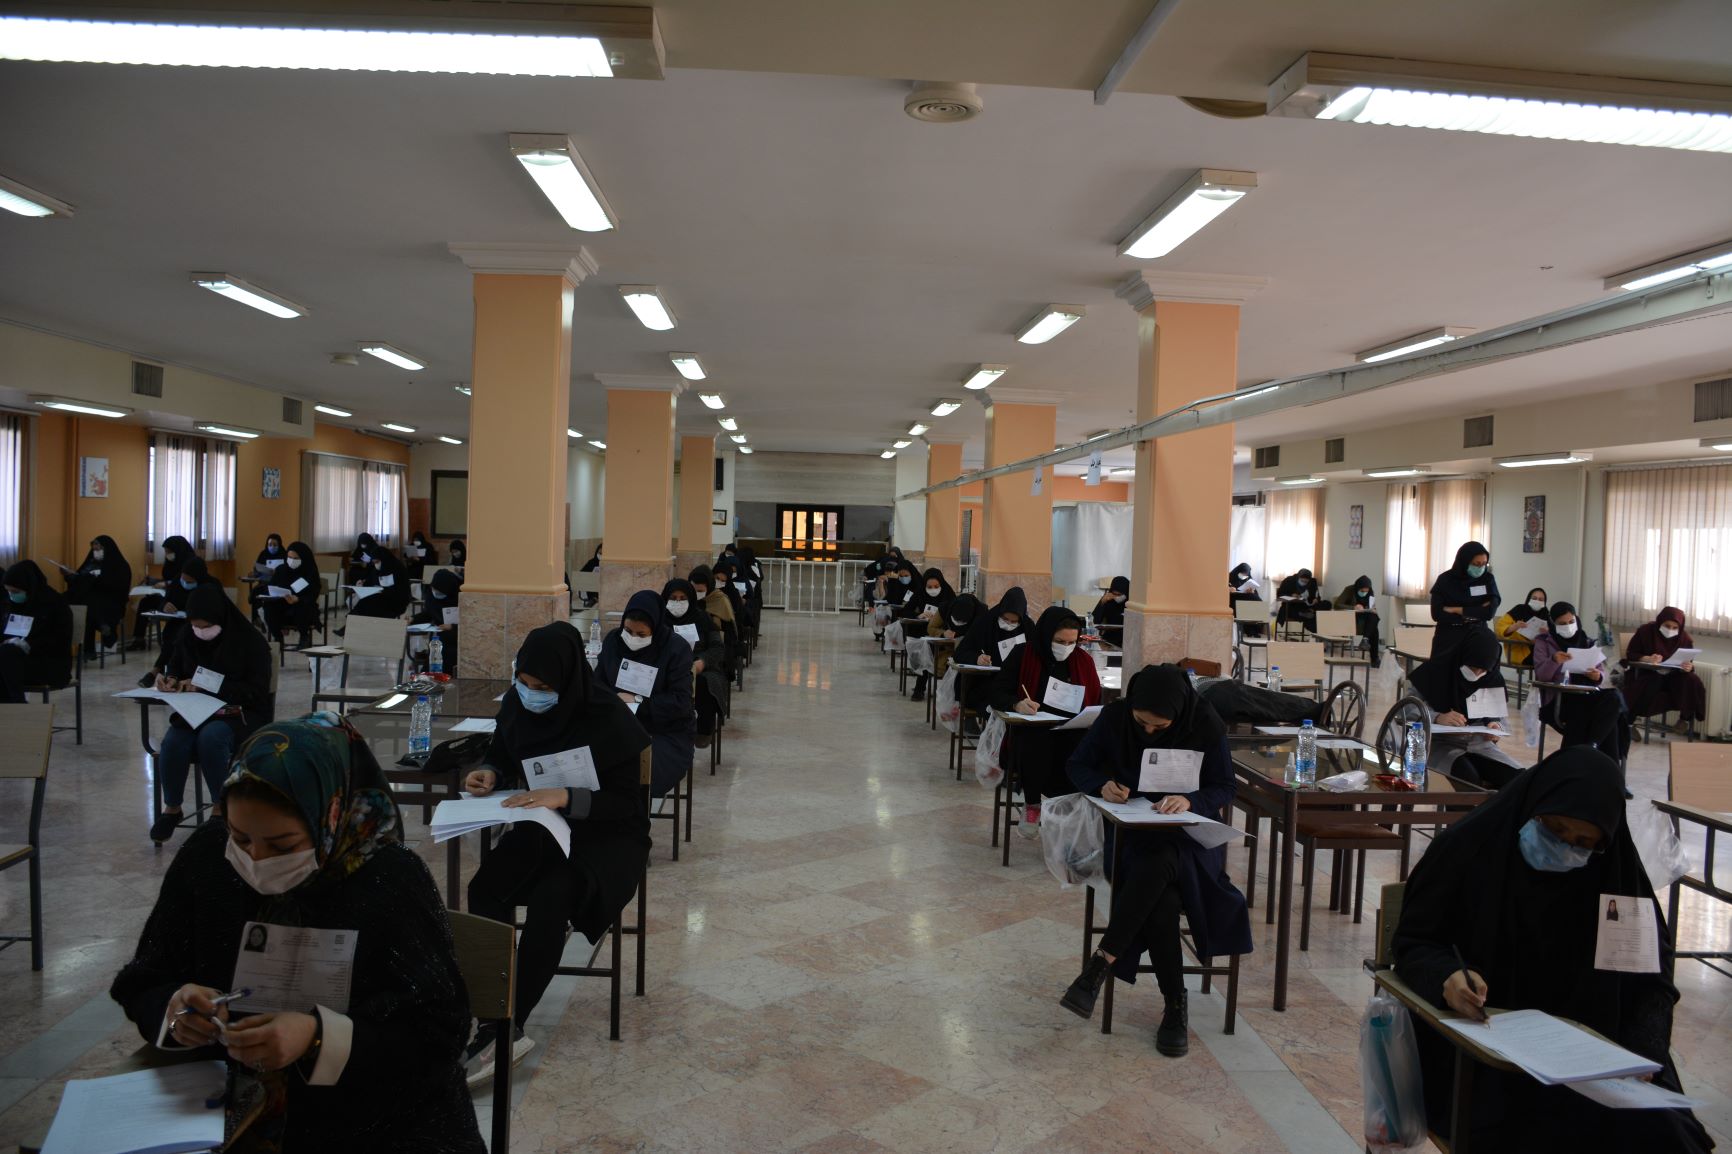 برگزاری آزمون فراگیر کارشناسی ارشد دانشگاه پیام نور در دانشگاه سجاد